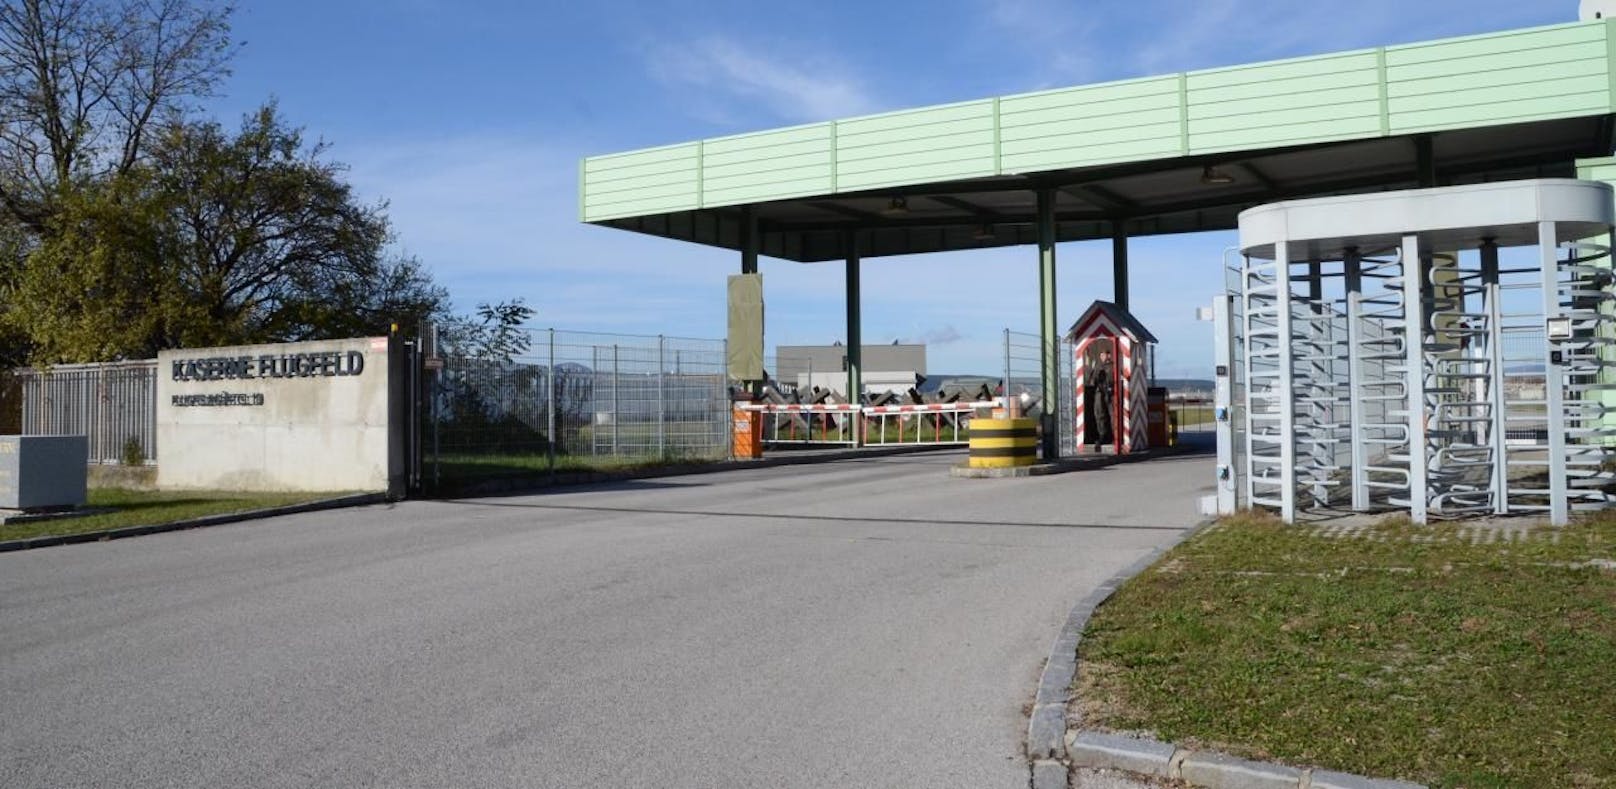 Die Kaserne Flugfeld in Wr. Neustadt war schon 2019 Schauplatz eines blutigen Vorfalles - zwei Hunde töteten einen 31-Jährigen